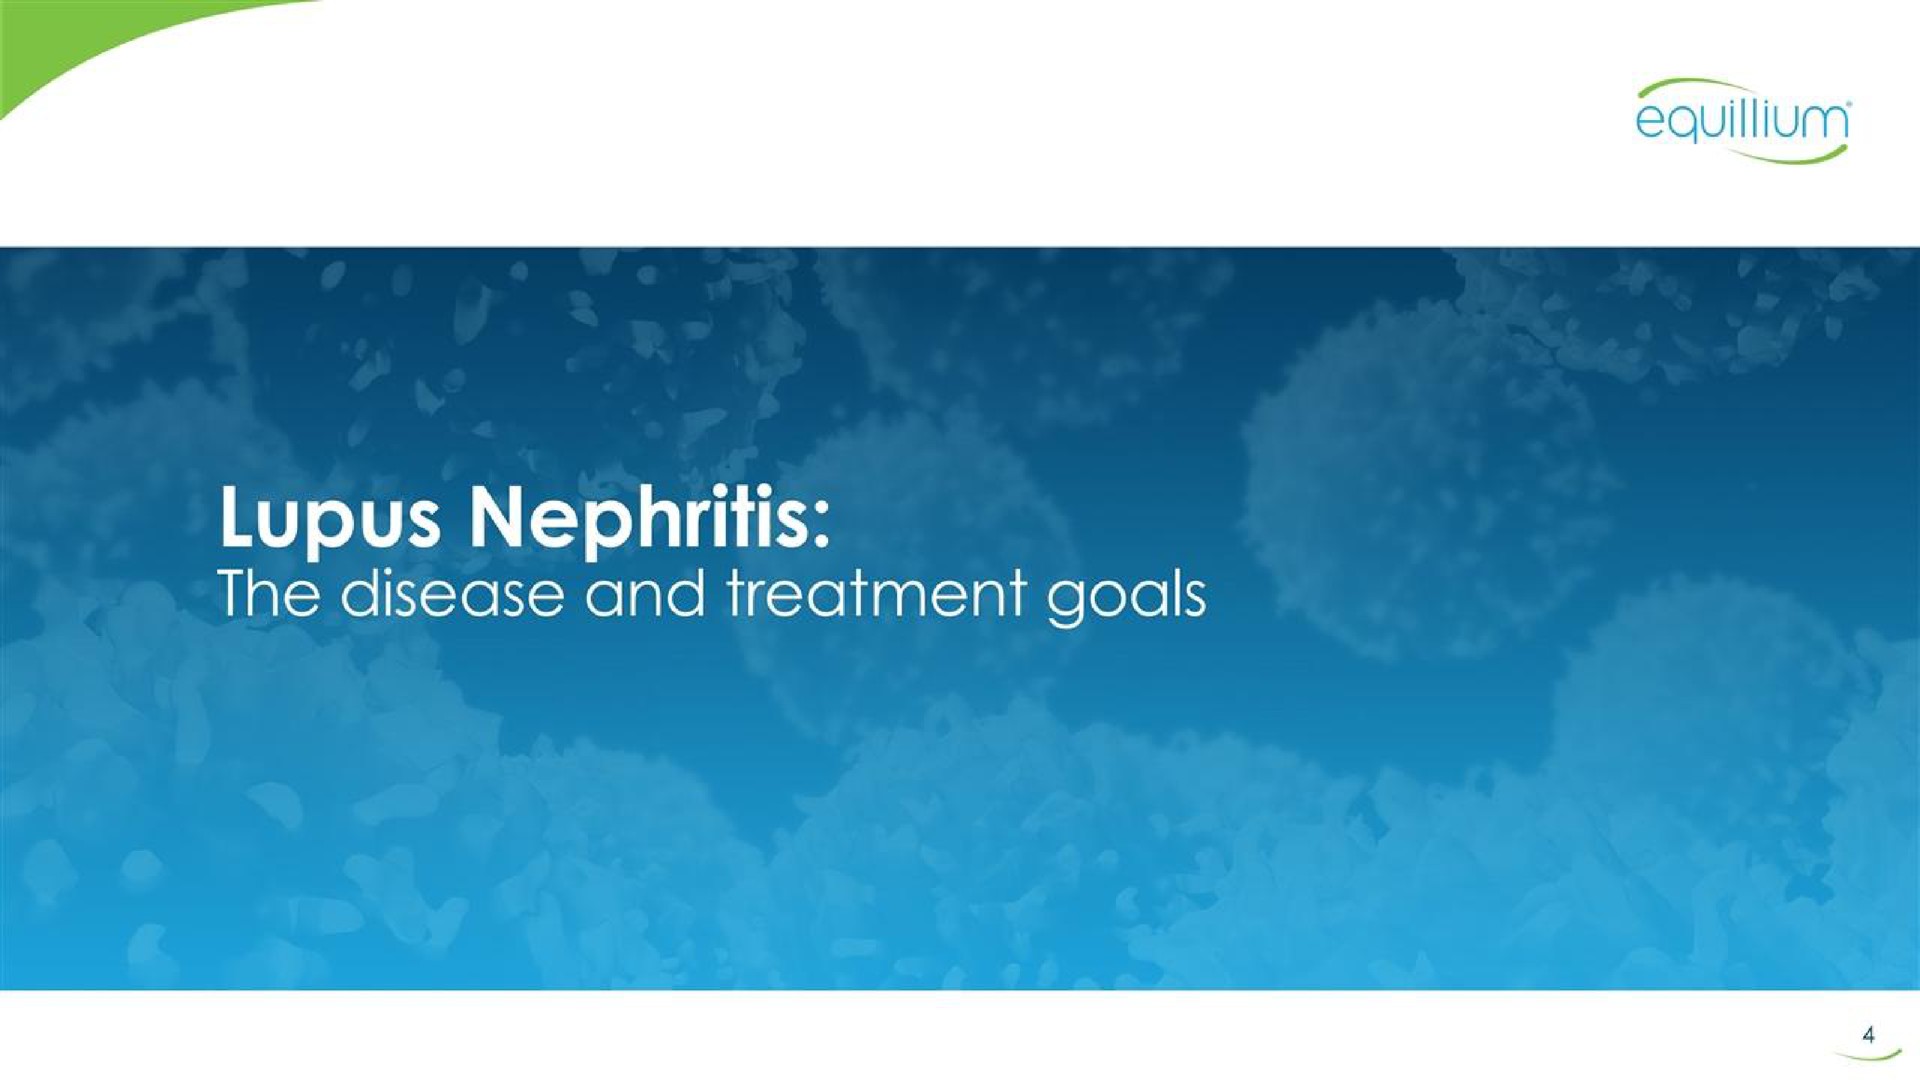 lupus nephritis the disease and treatment goals | Equillium